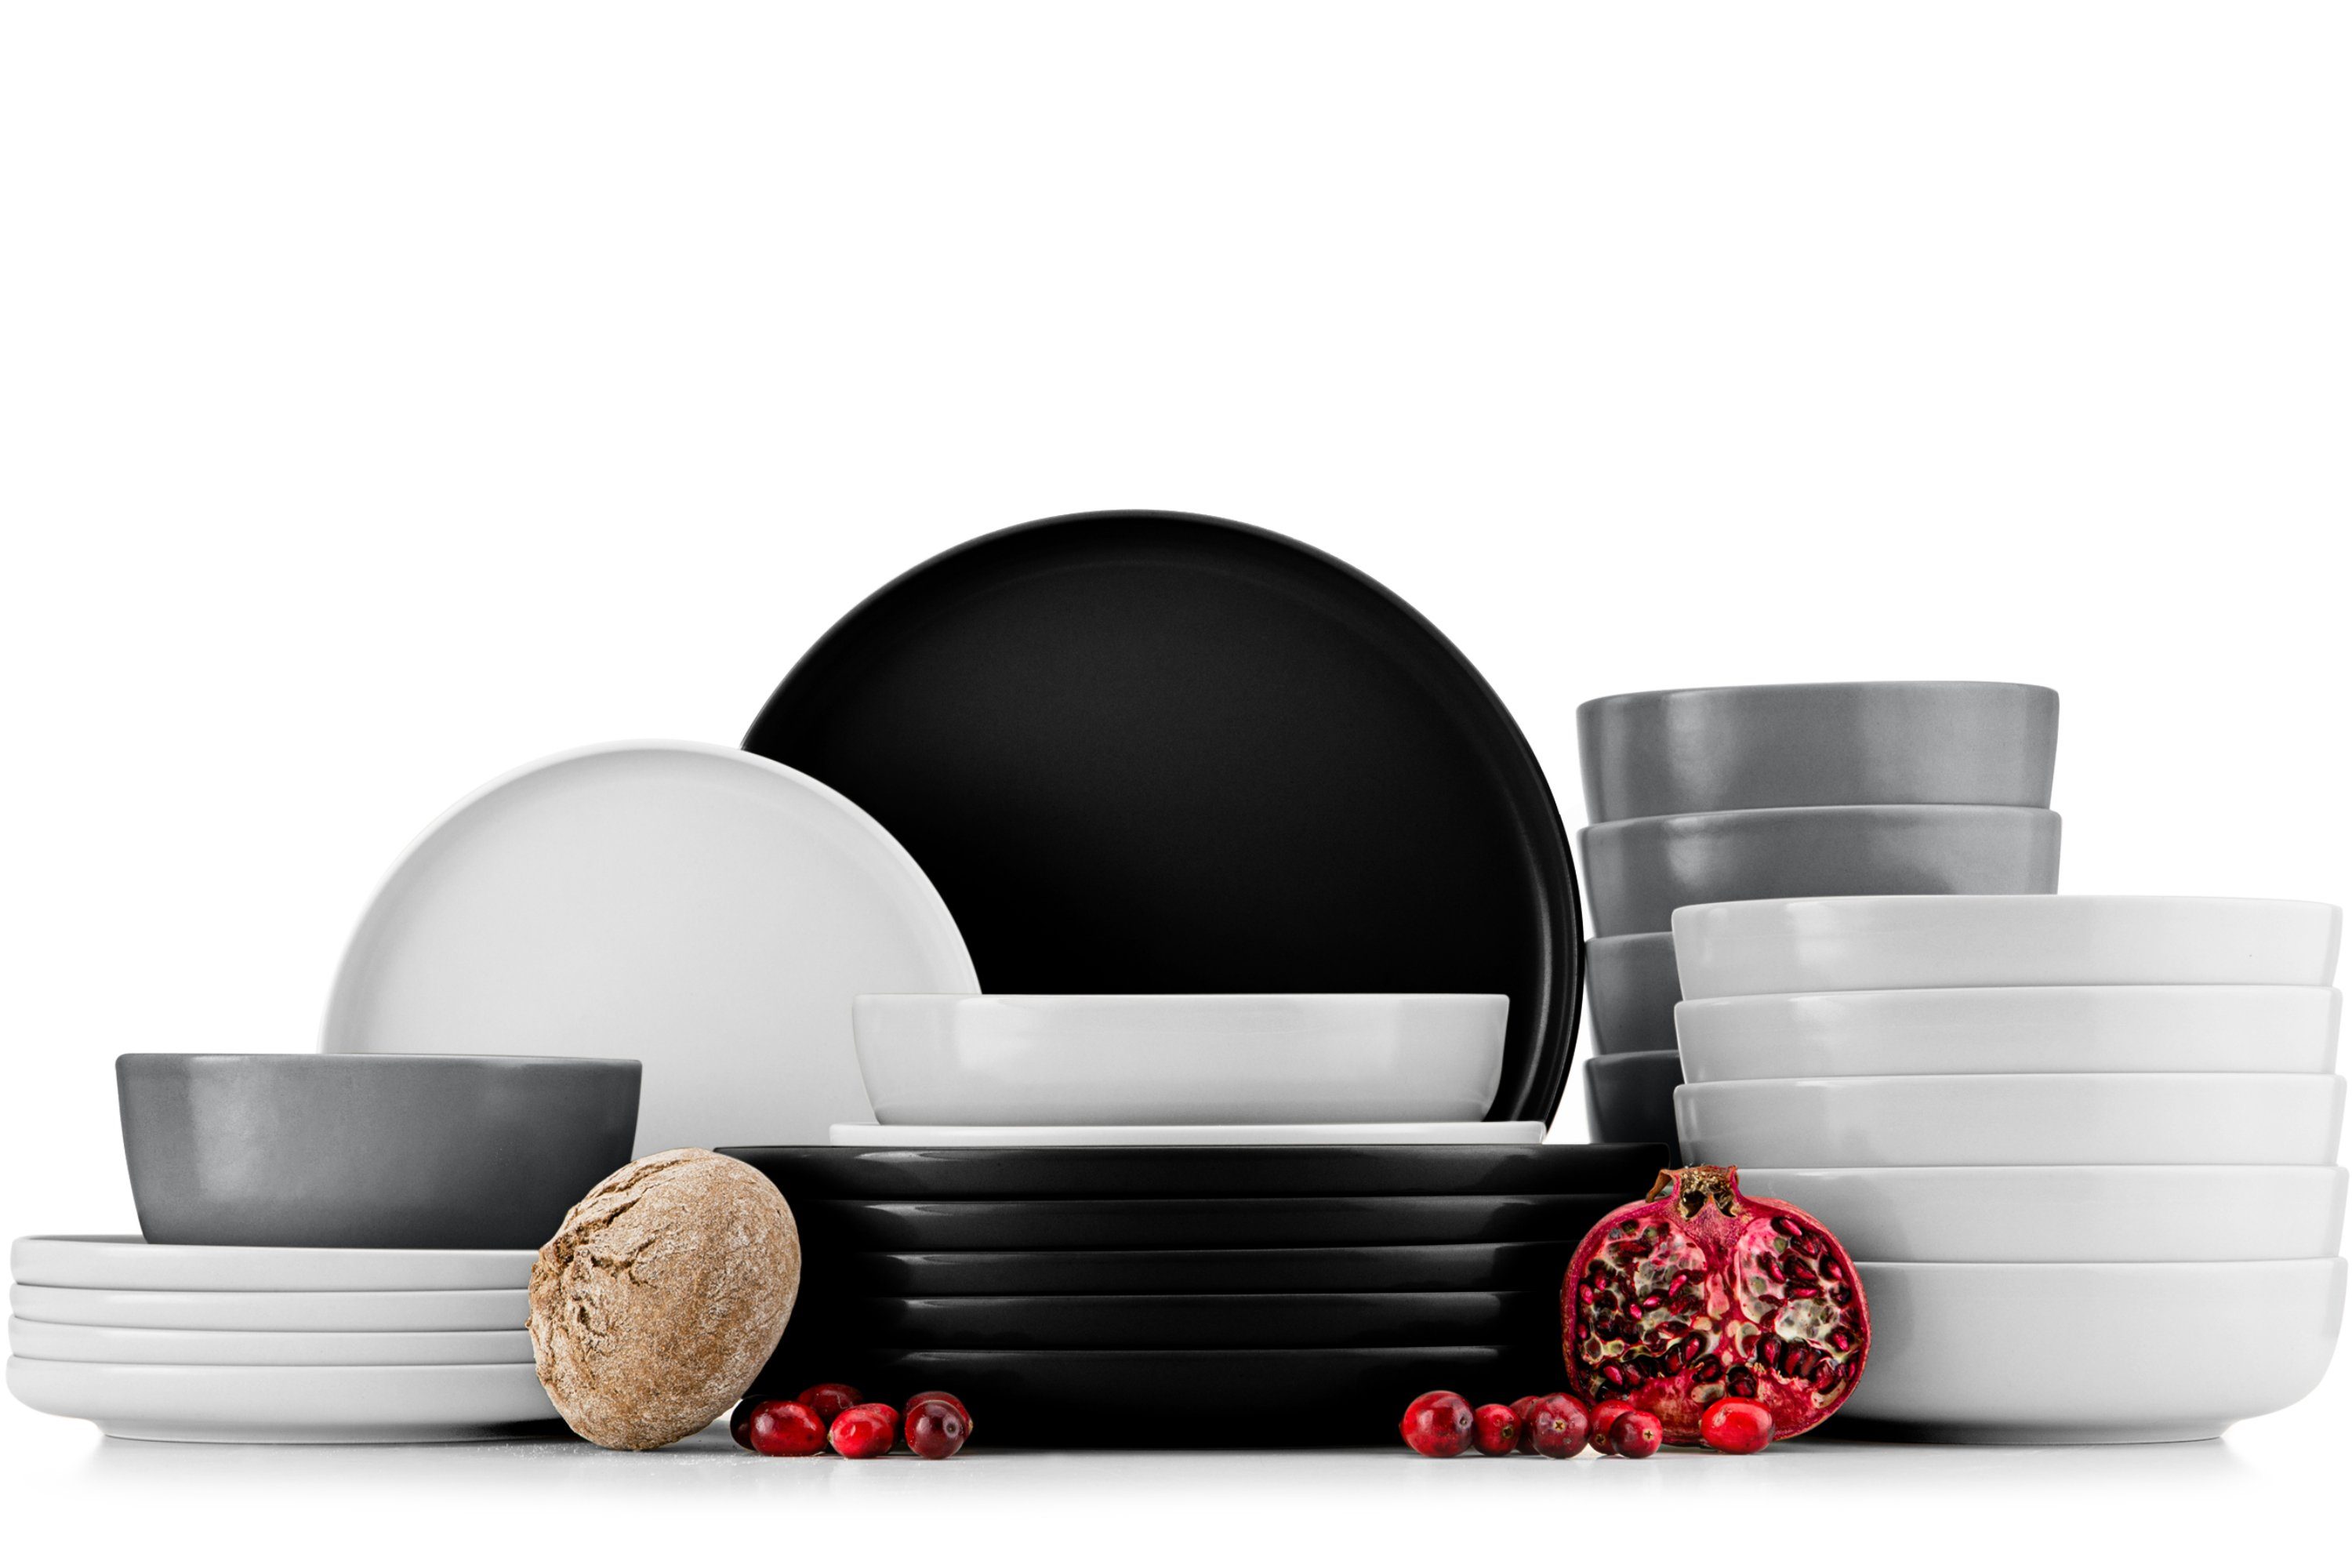 Konsimo Kombiservice VICTO Geschirrset hergestellt in der EU (24-tlg), 6 Personen, Steingut, spülmaschinengeeignet, mikrowellengeeignet, mehrfarbig, matt matt schwarz/weiß/grau/weiß